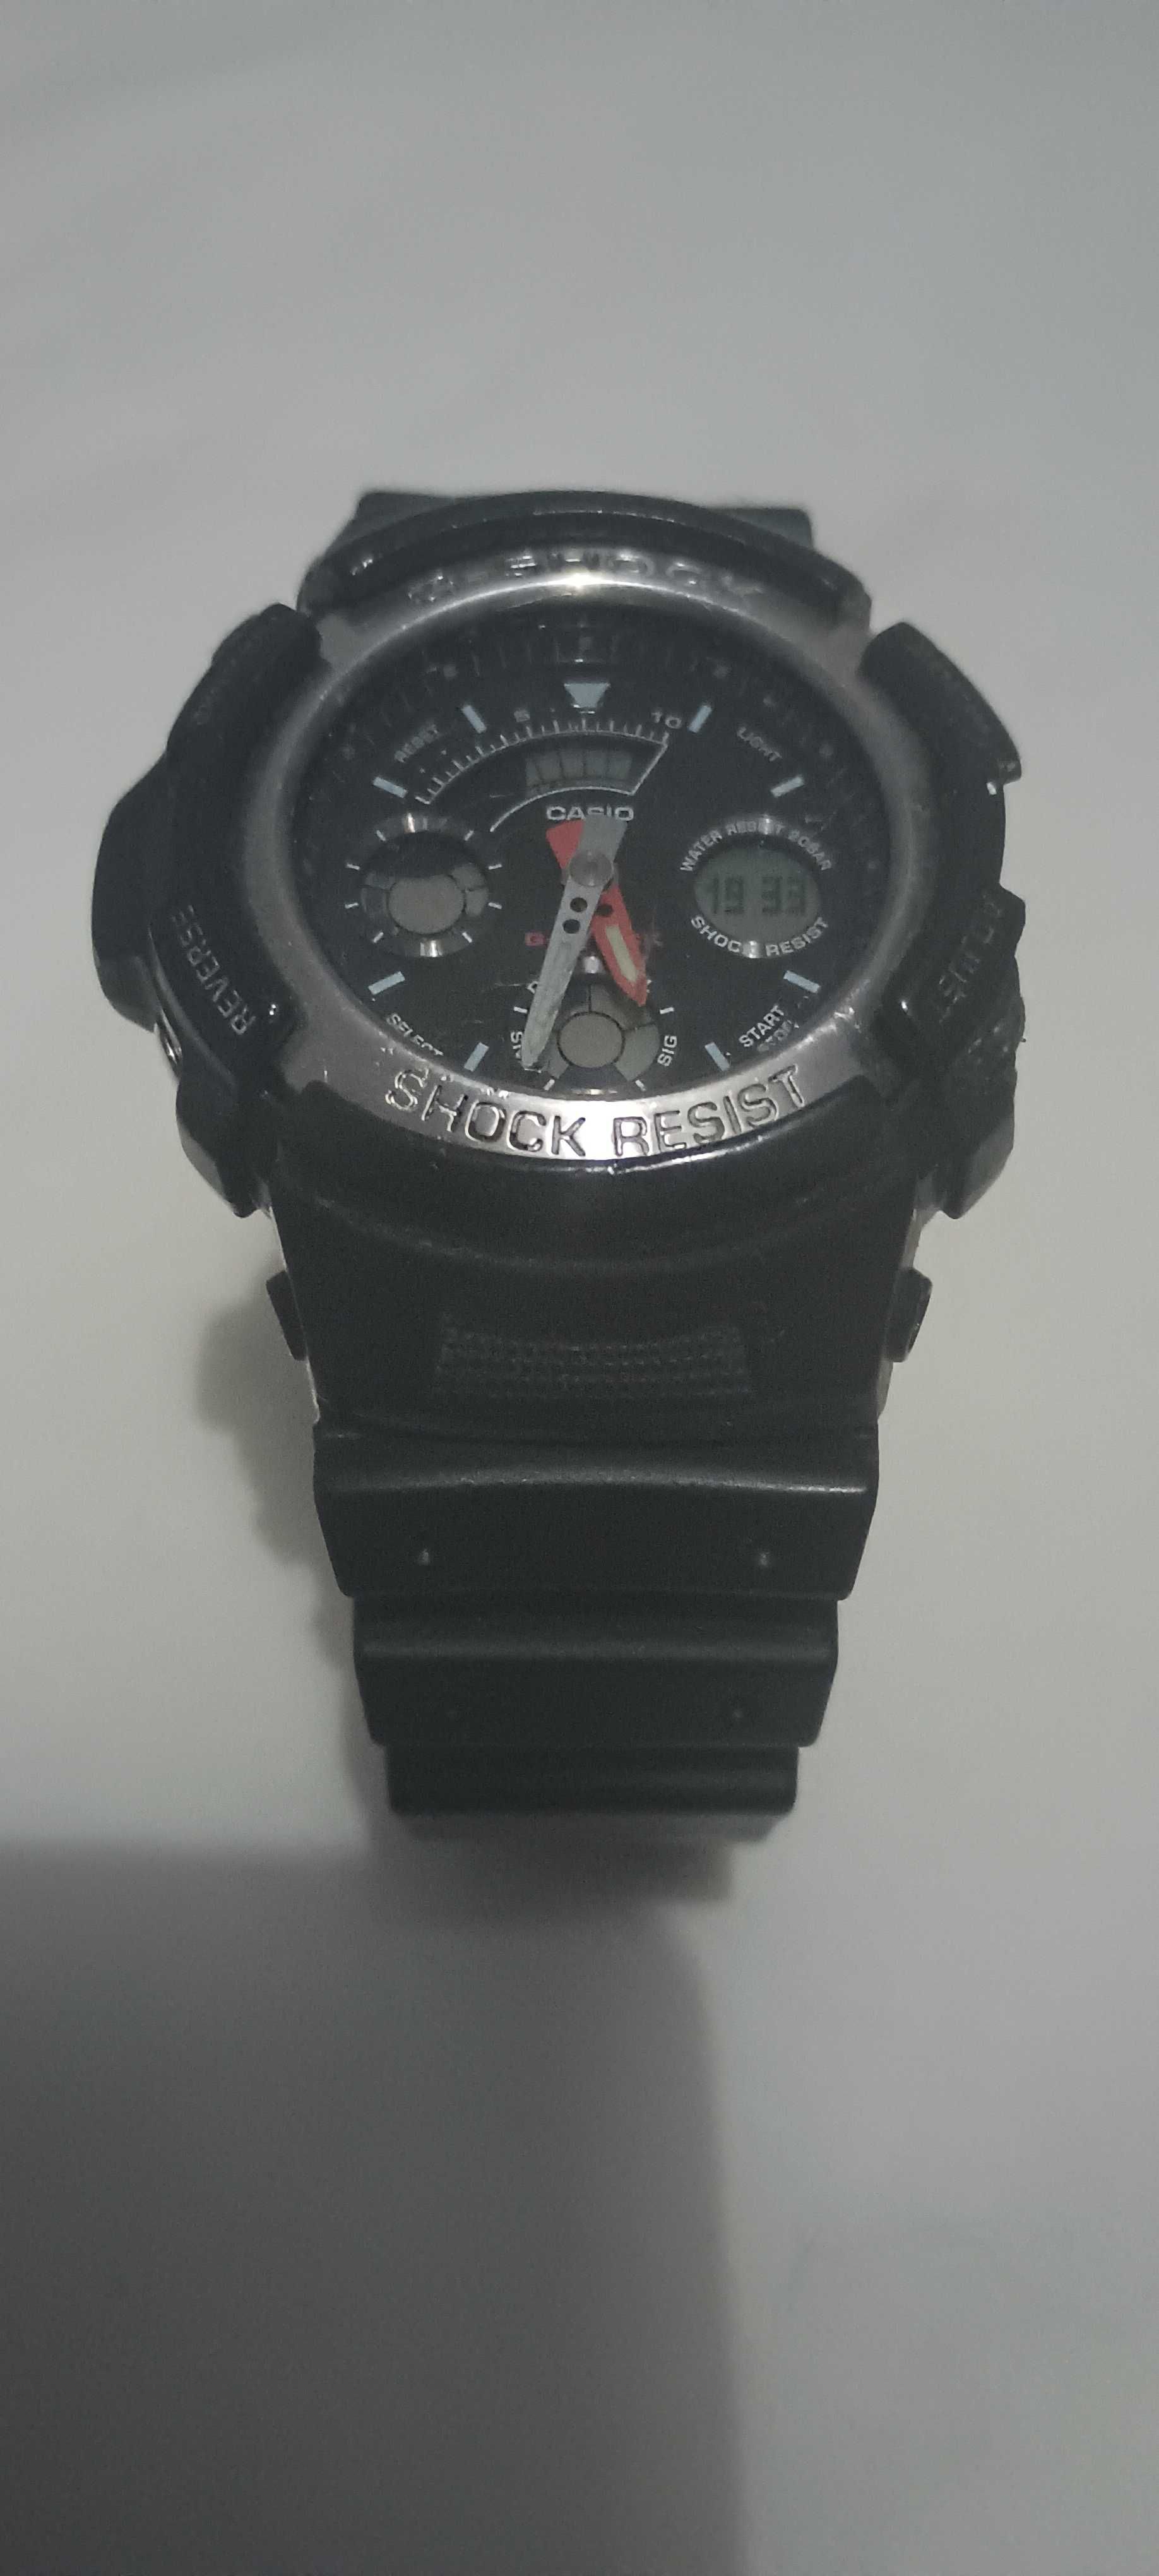 Zegarek męski G-Shock AW-590 Tanio.